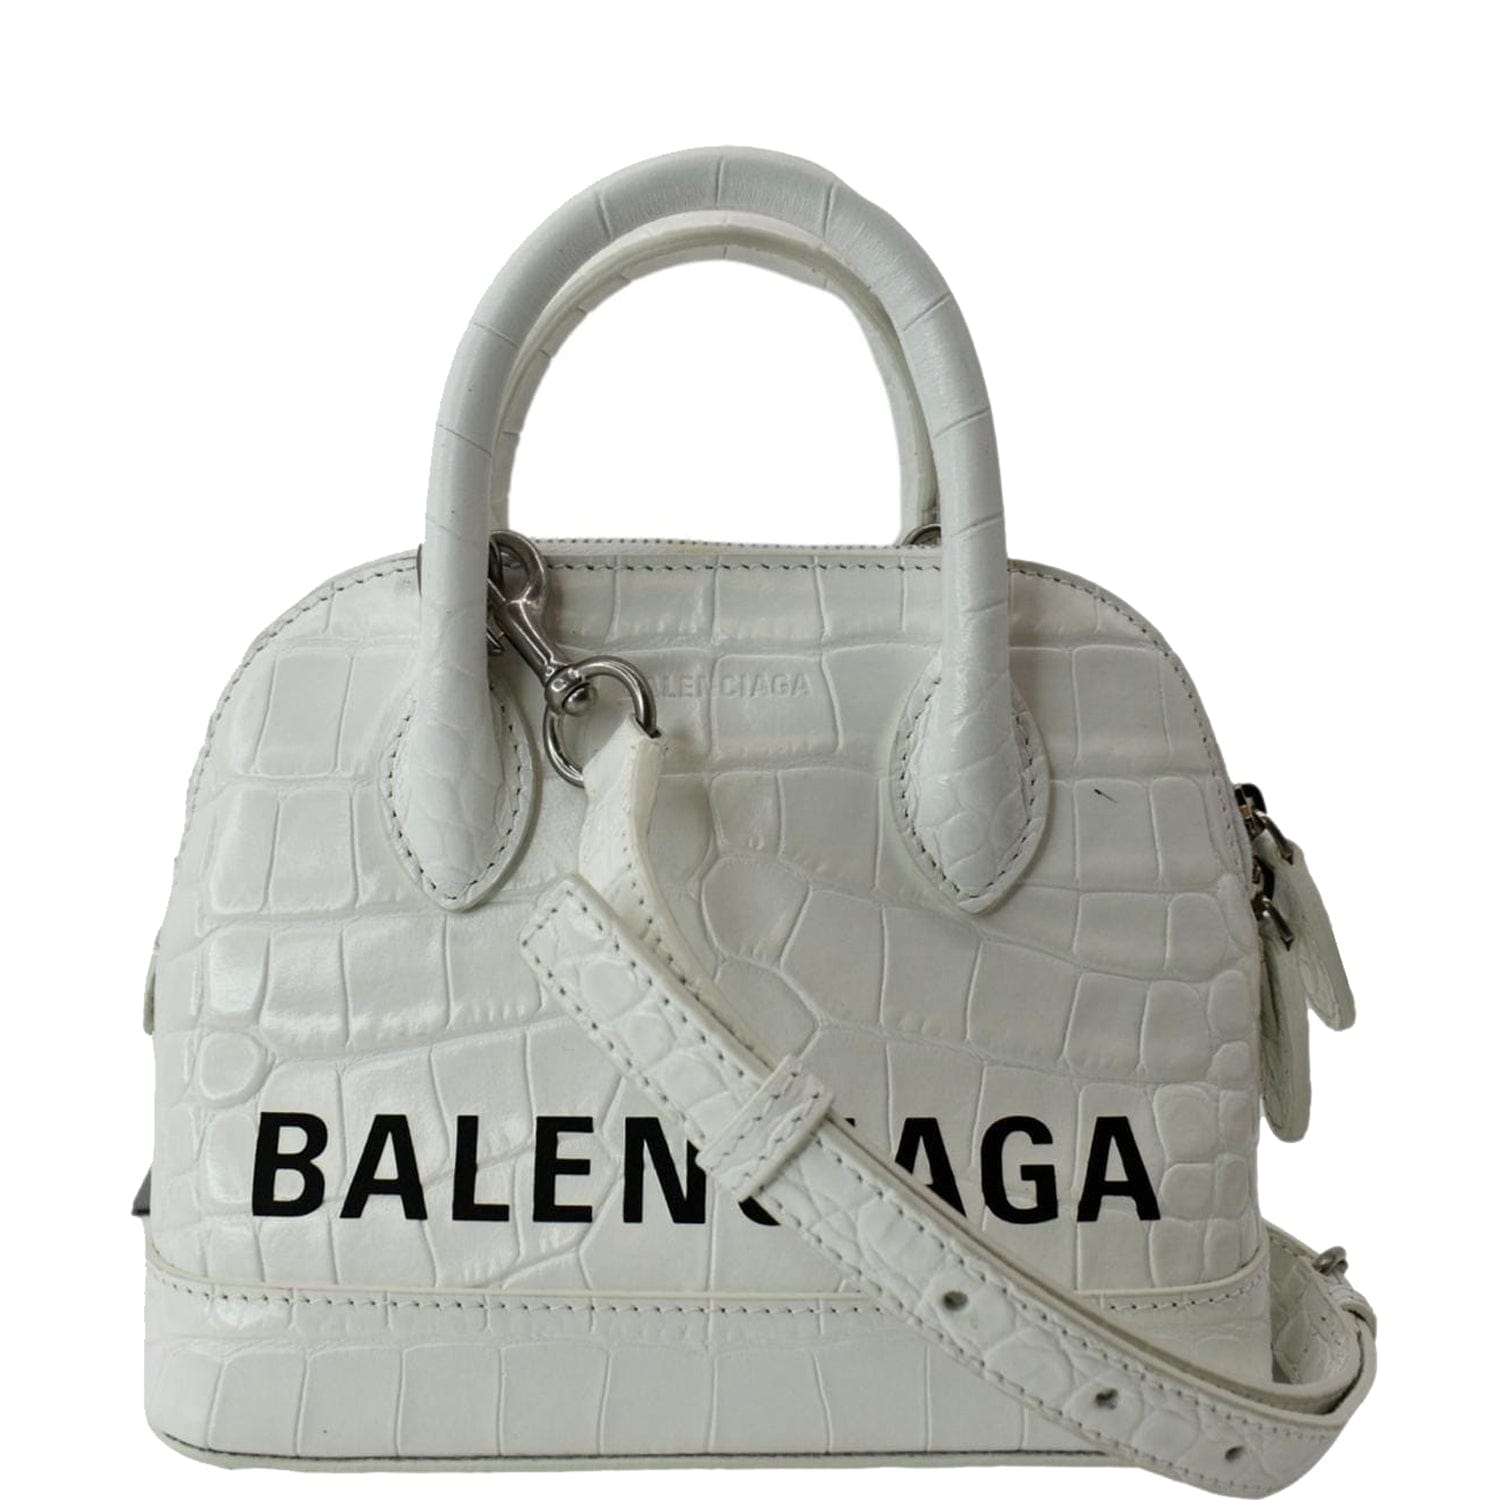 Balenciaga Crossbody Bag Women 537387DLQ4N9060 Leather White Off White 570€